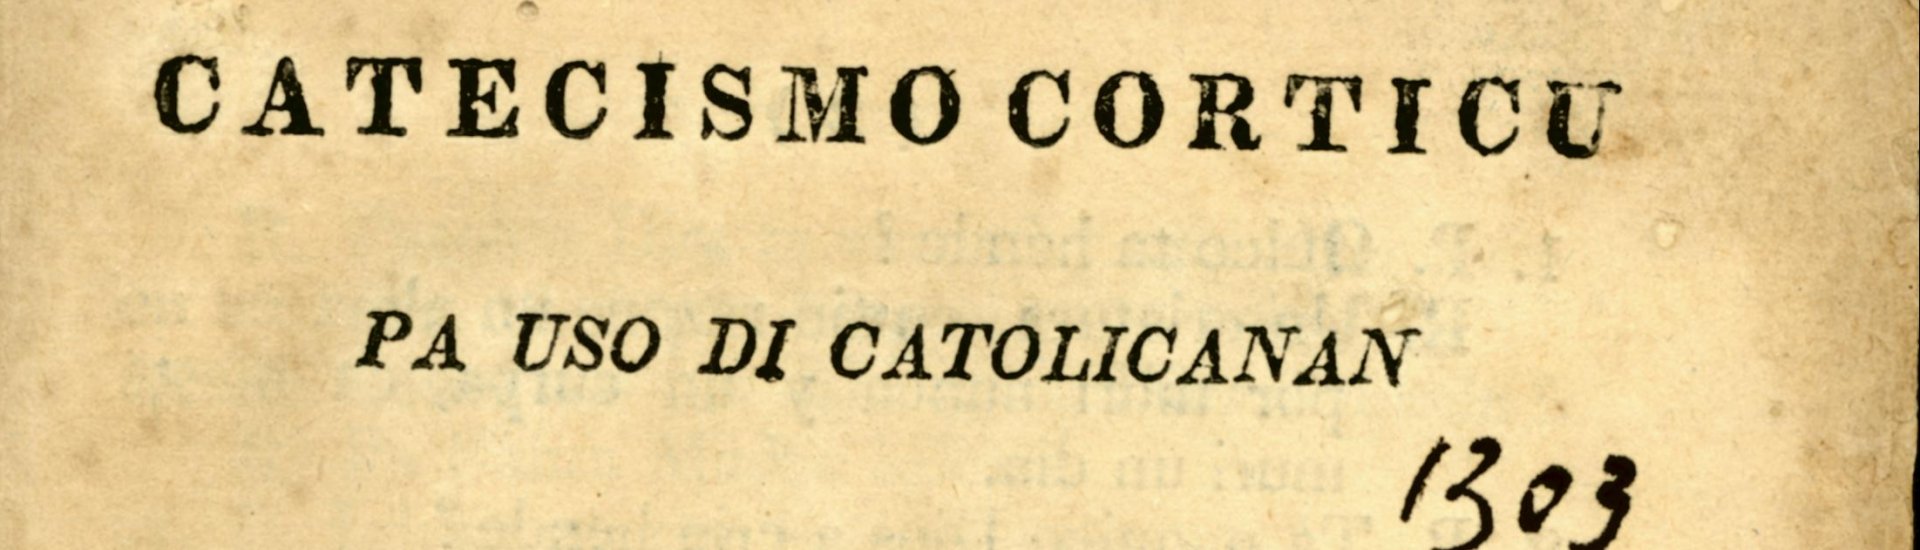 Voorblad van de Catecismo Corticu